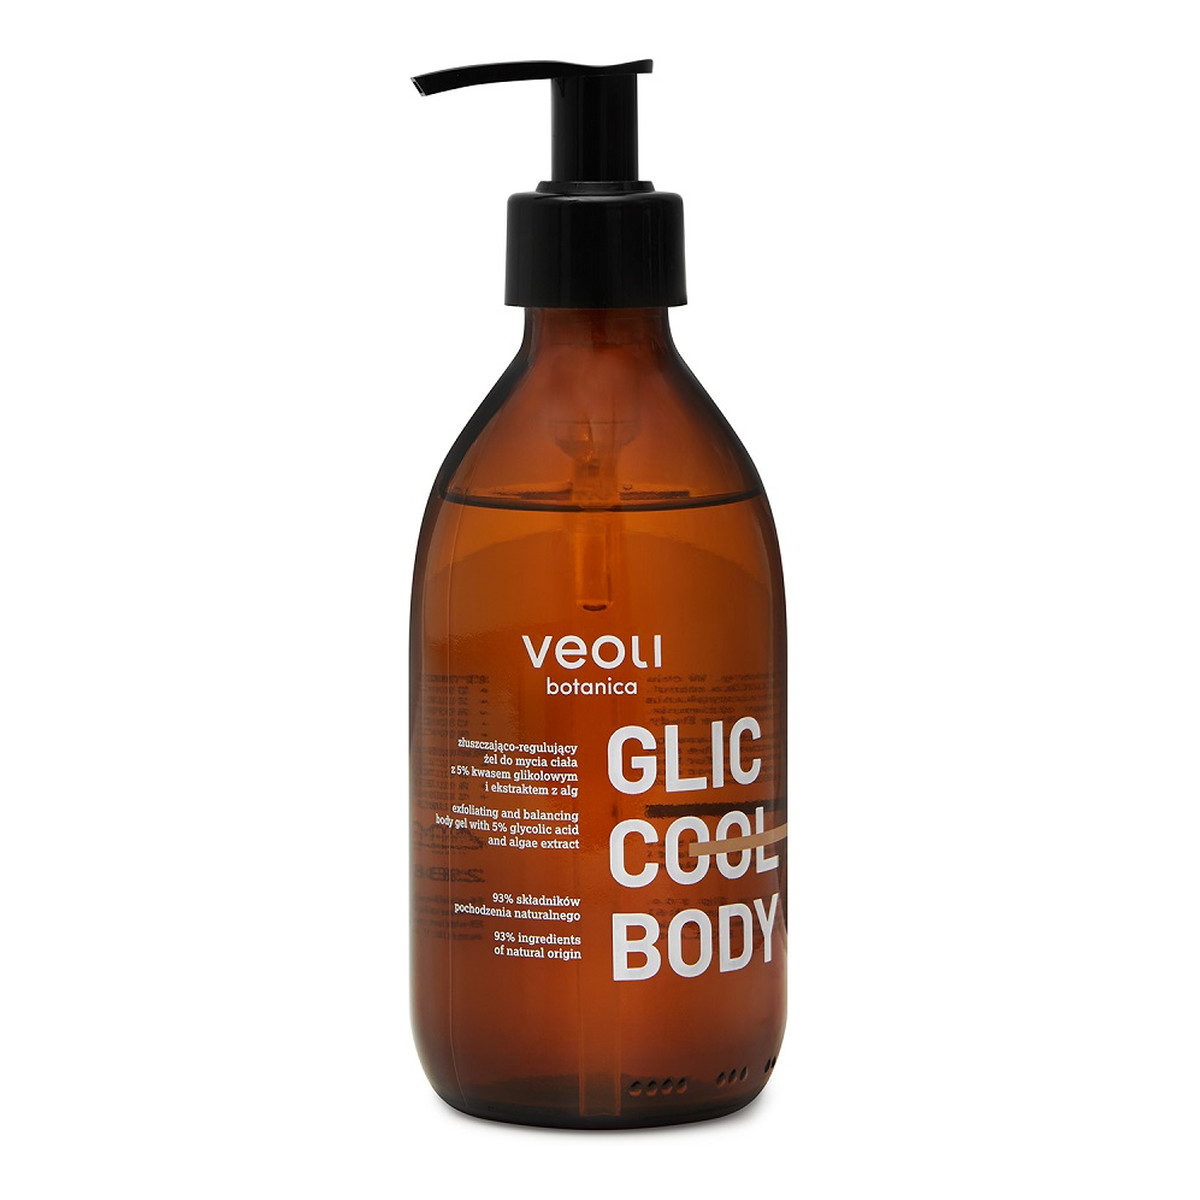 Veoli Botanica Glic Cool Body złuszczająco-regulujący Żel do mycia ciała 280ml